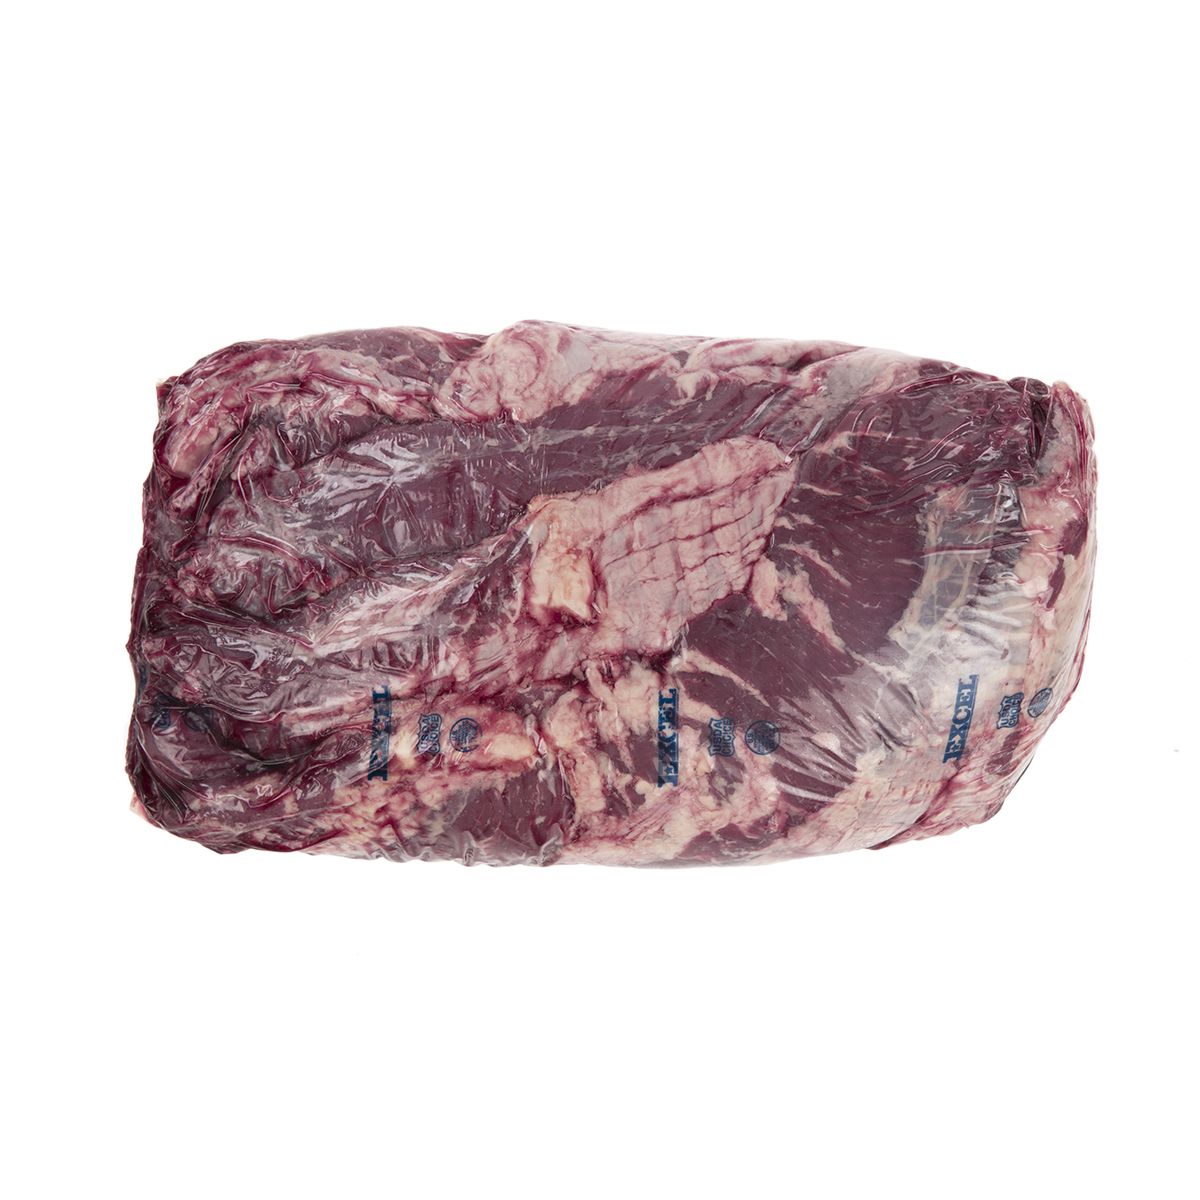 Demkota Ranch Beef High Choice Beef Bottom Sirloin Flap